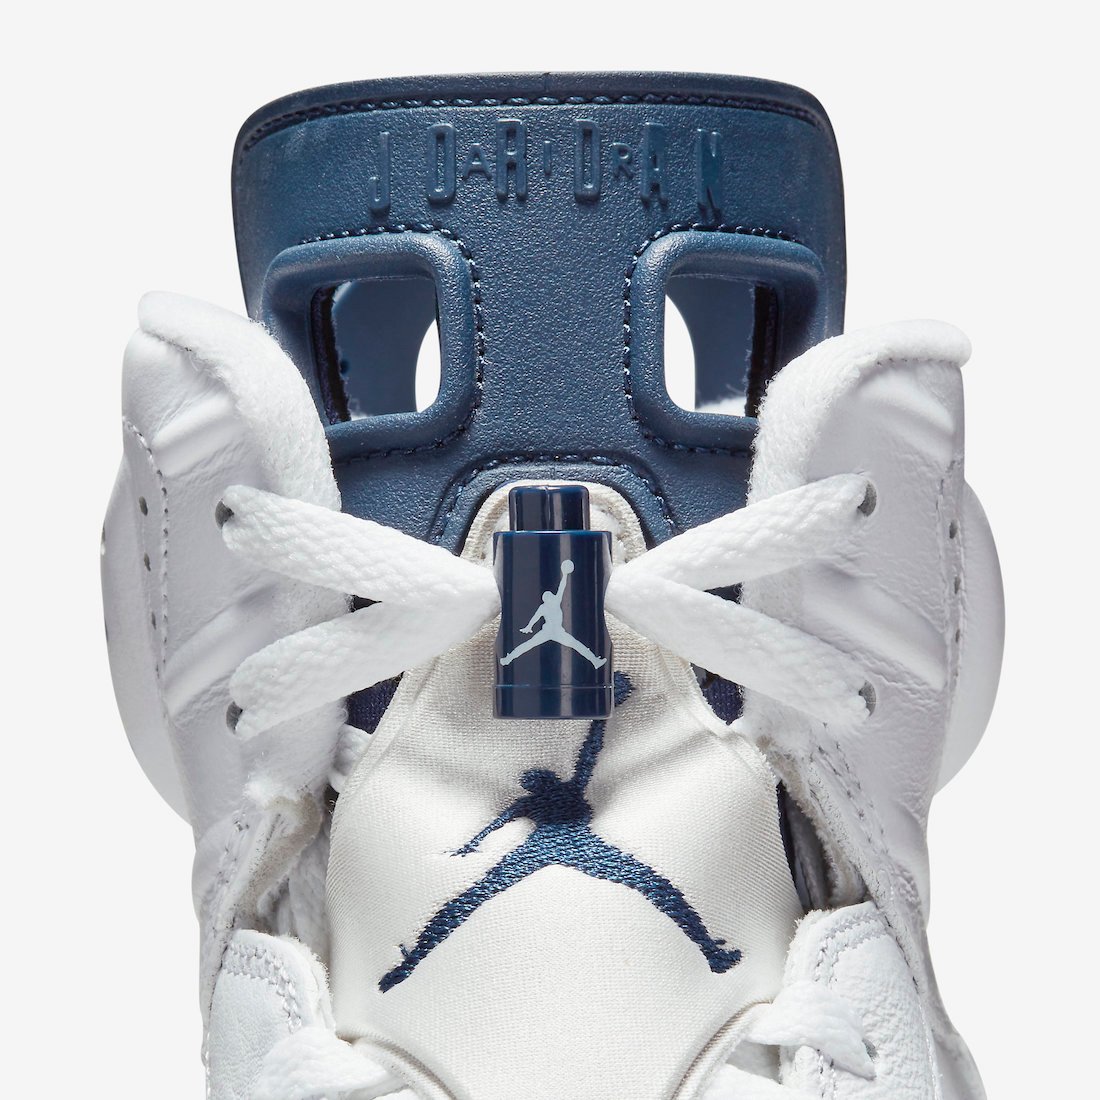 Nike Air Jordan Retro I High OG Bordeaux 2021 CT8529-141 Release Info Price